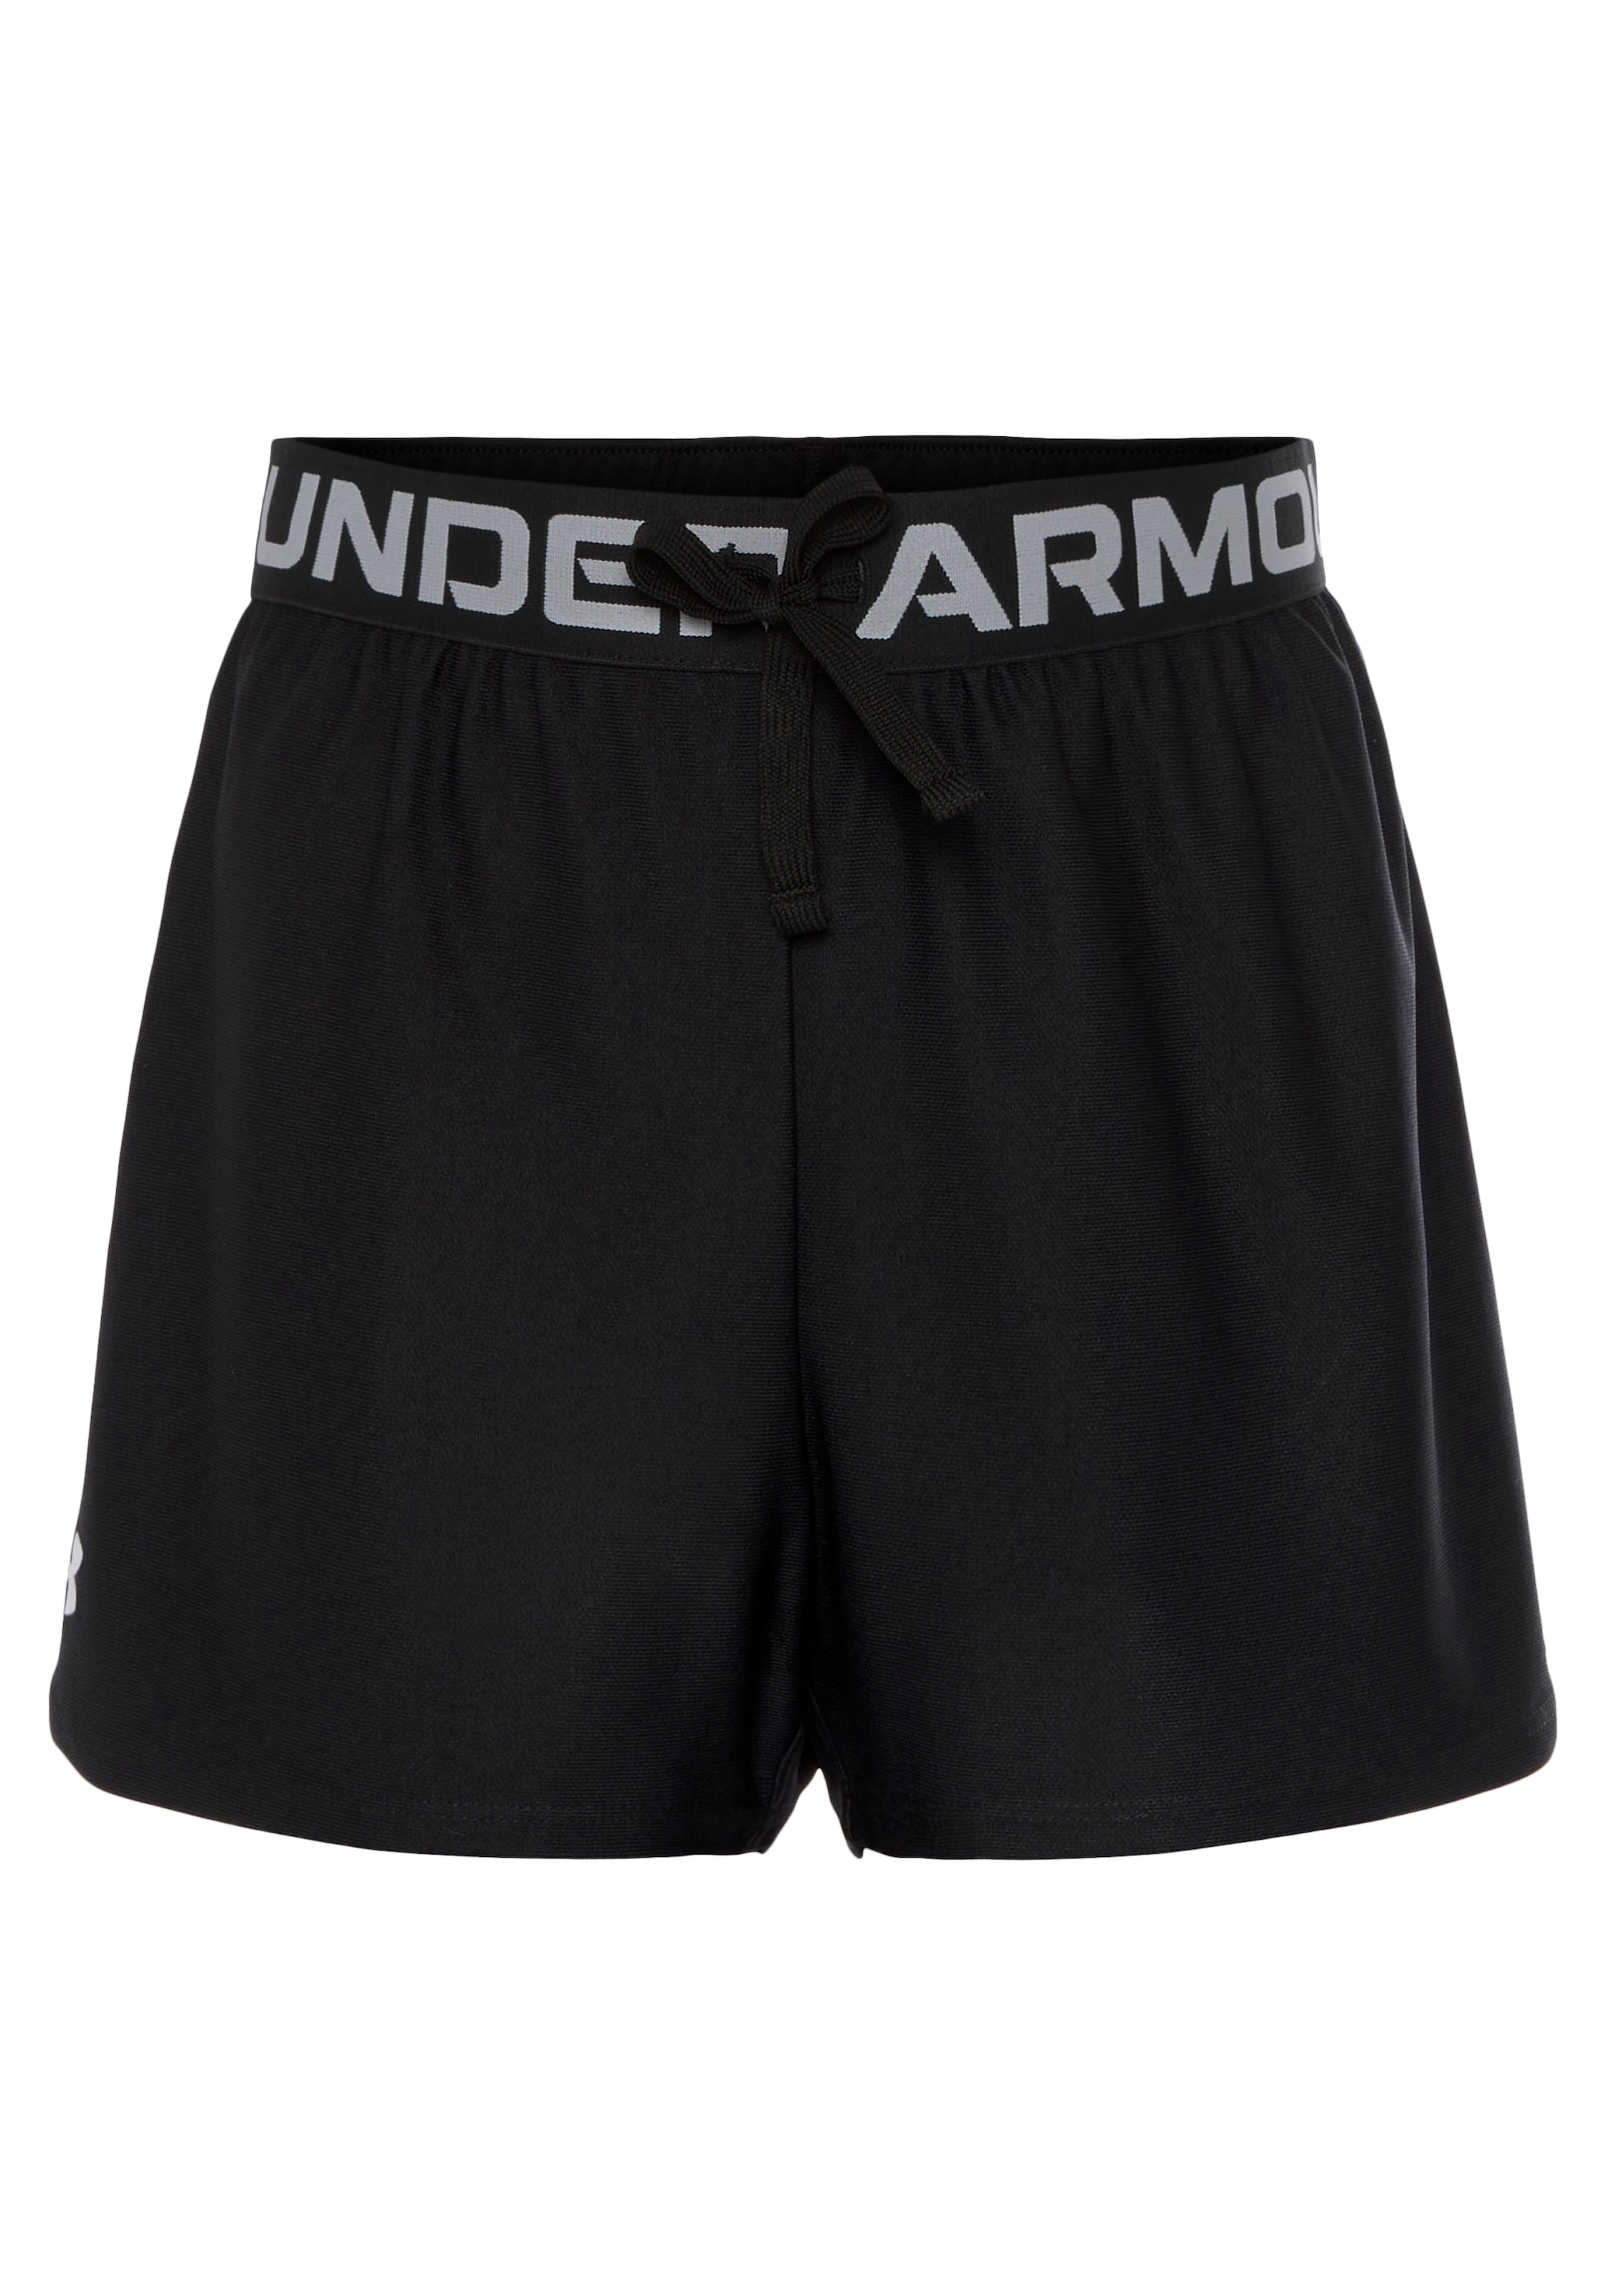 Under armour shorts grau kaufen